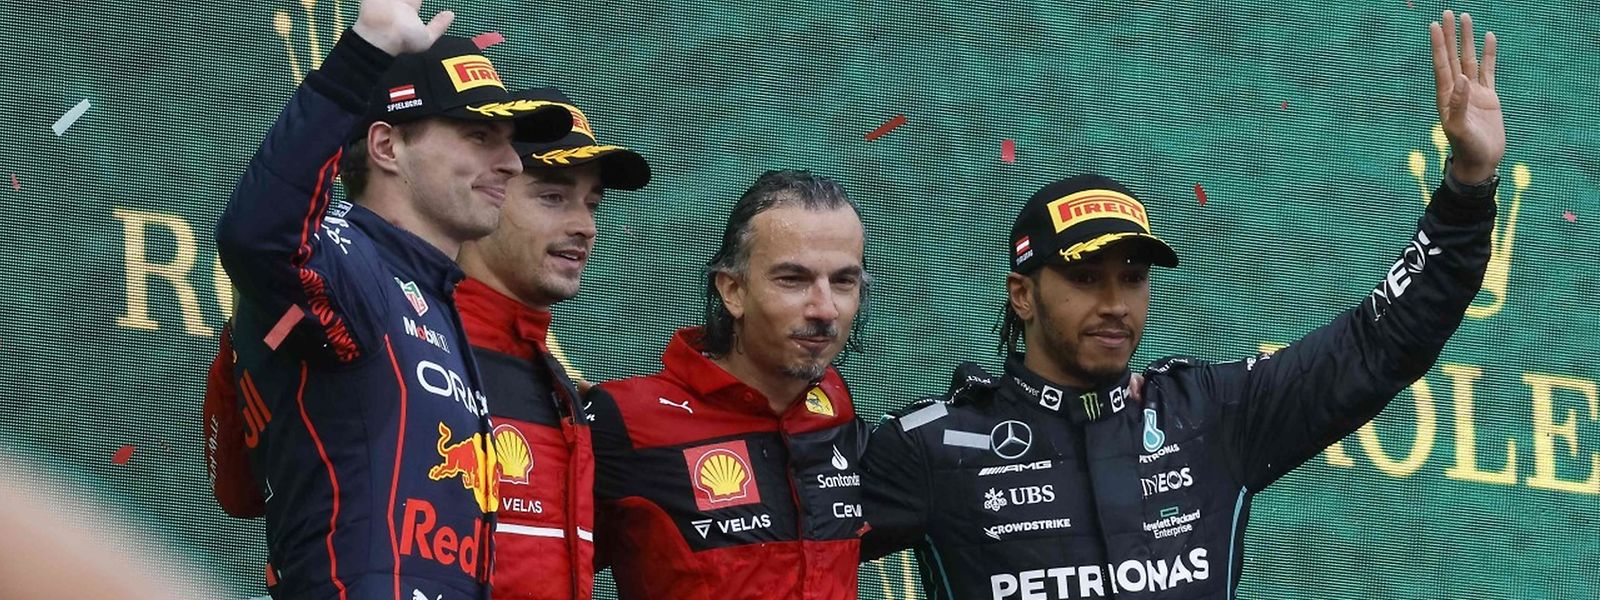 Topfahrer wie Max Verstappen (l.), Charles Leclerc (2.v.l.) und Lewis Hamilton (r.) müssen nicht um ihren Platz im Cockpit fürchten.